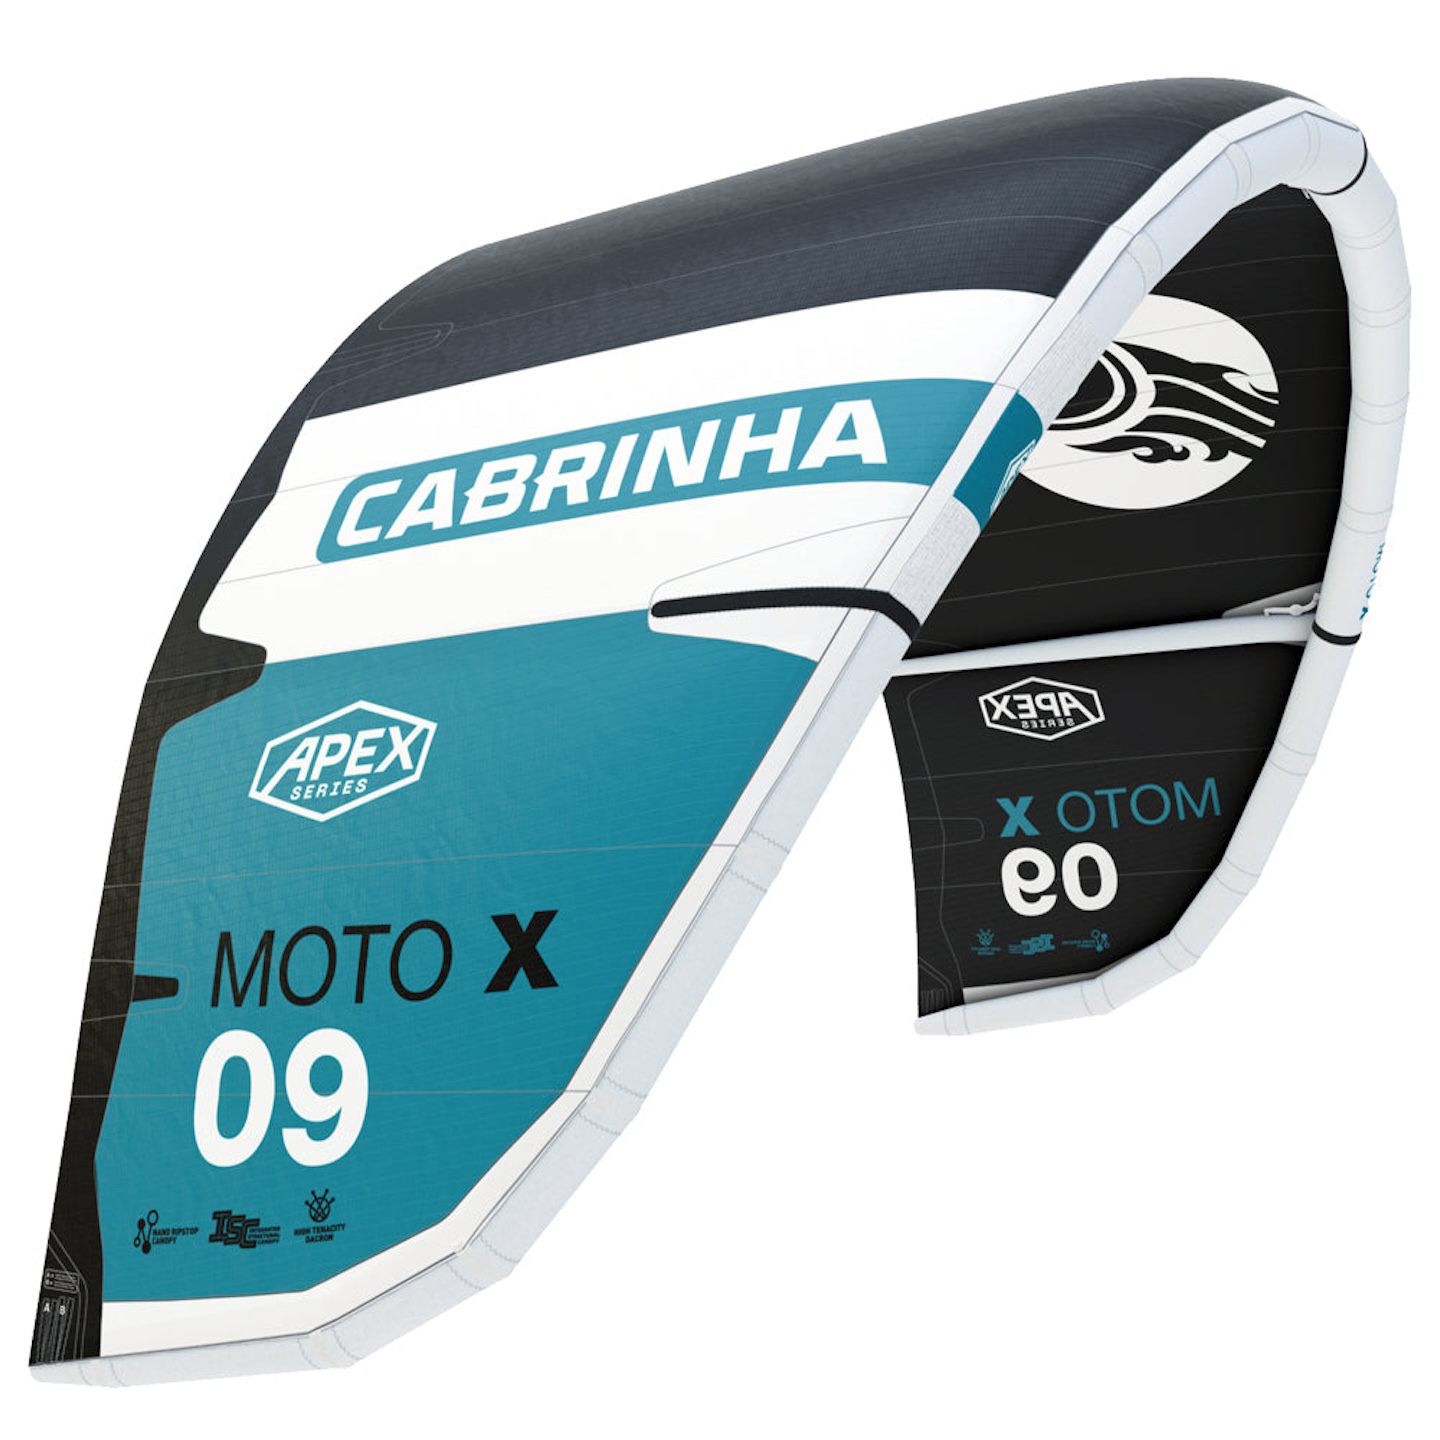 Cabrinha 04S Moto X Apex Kite C4